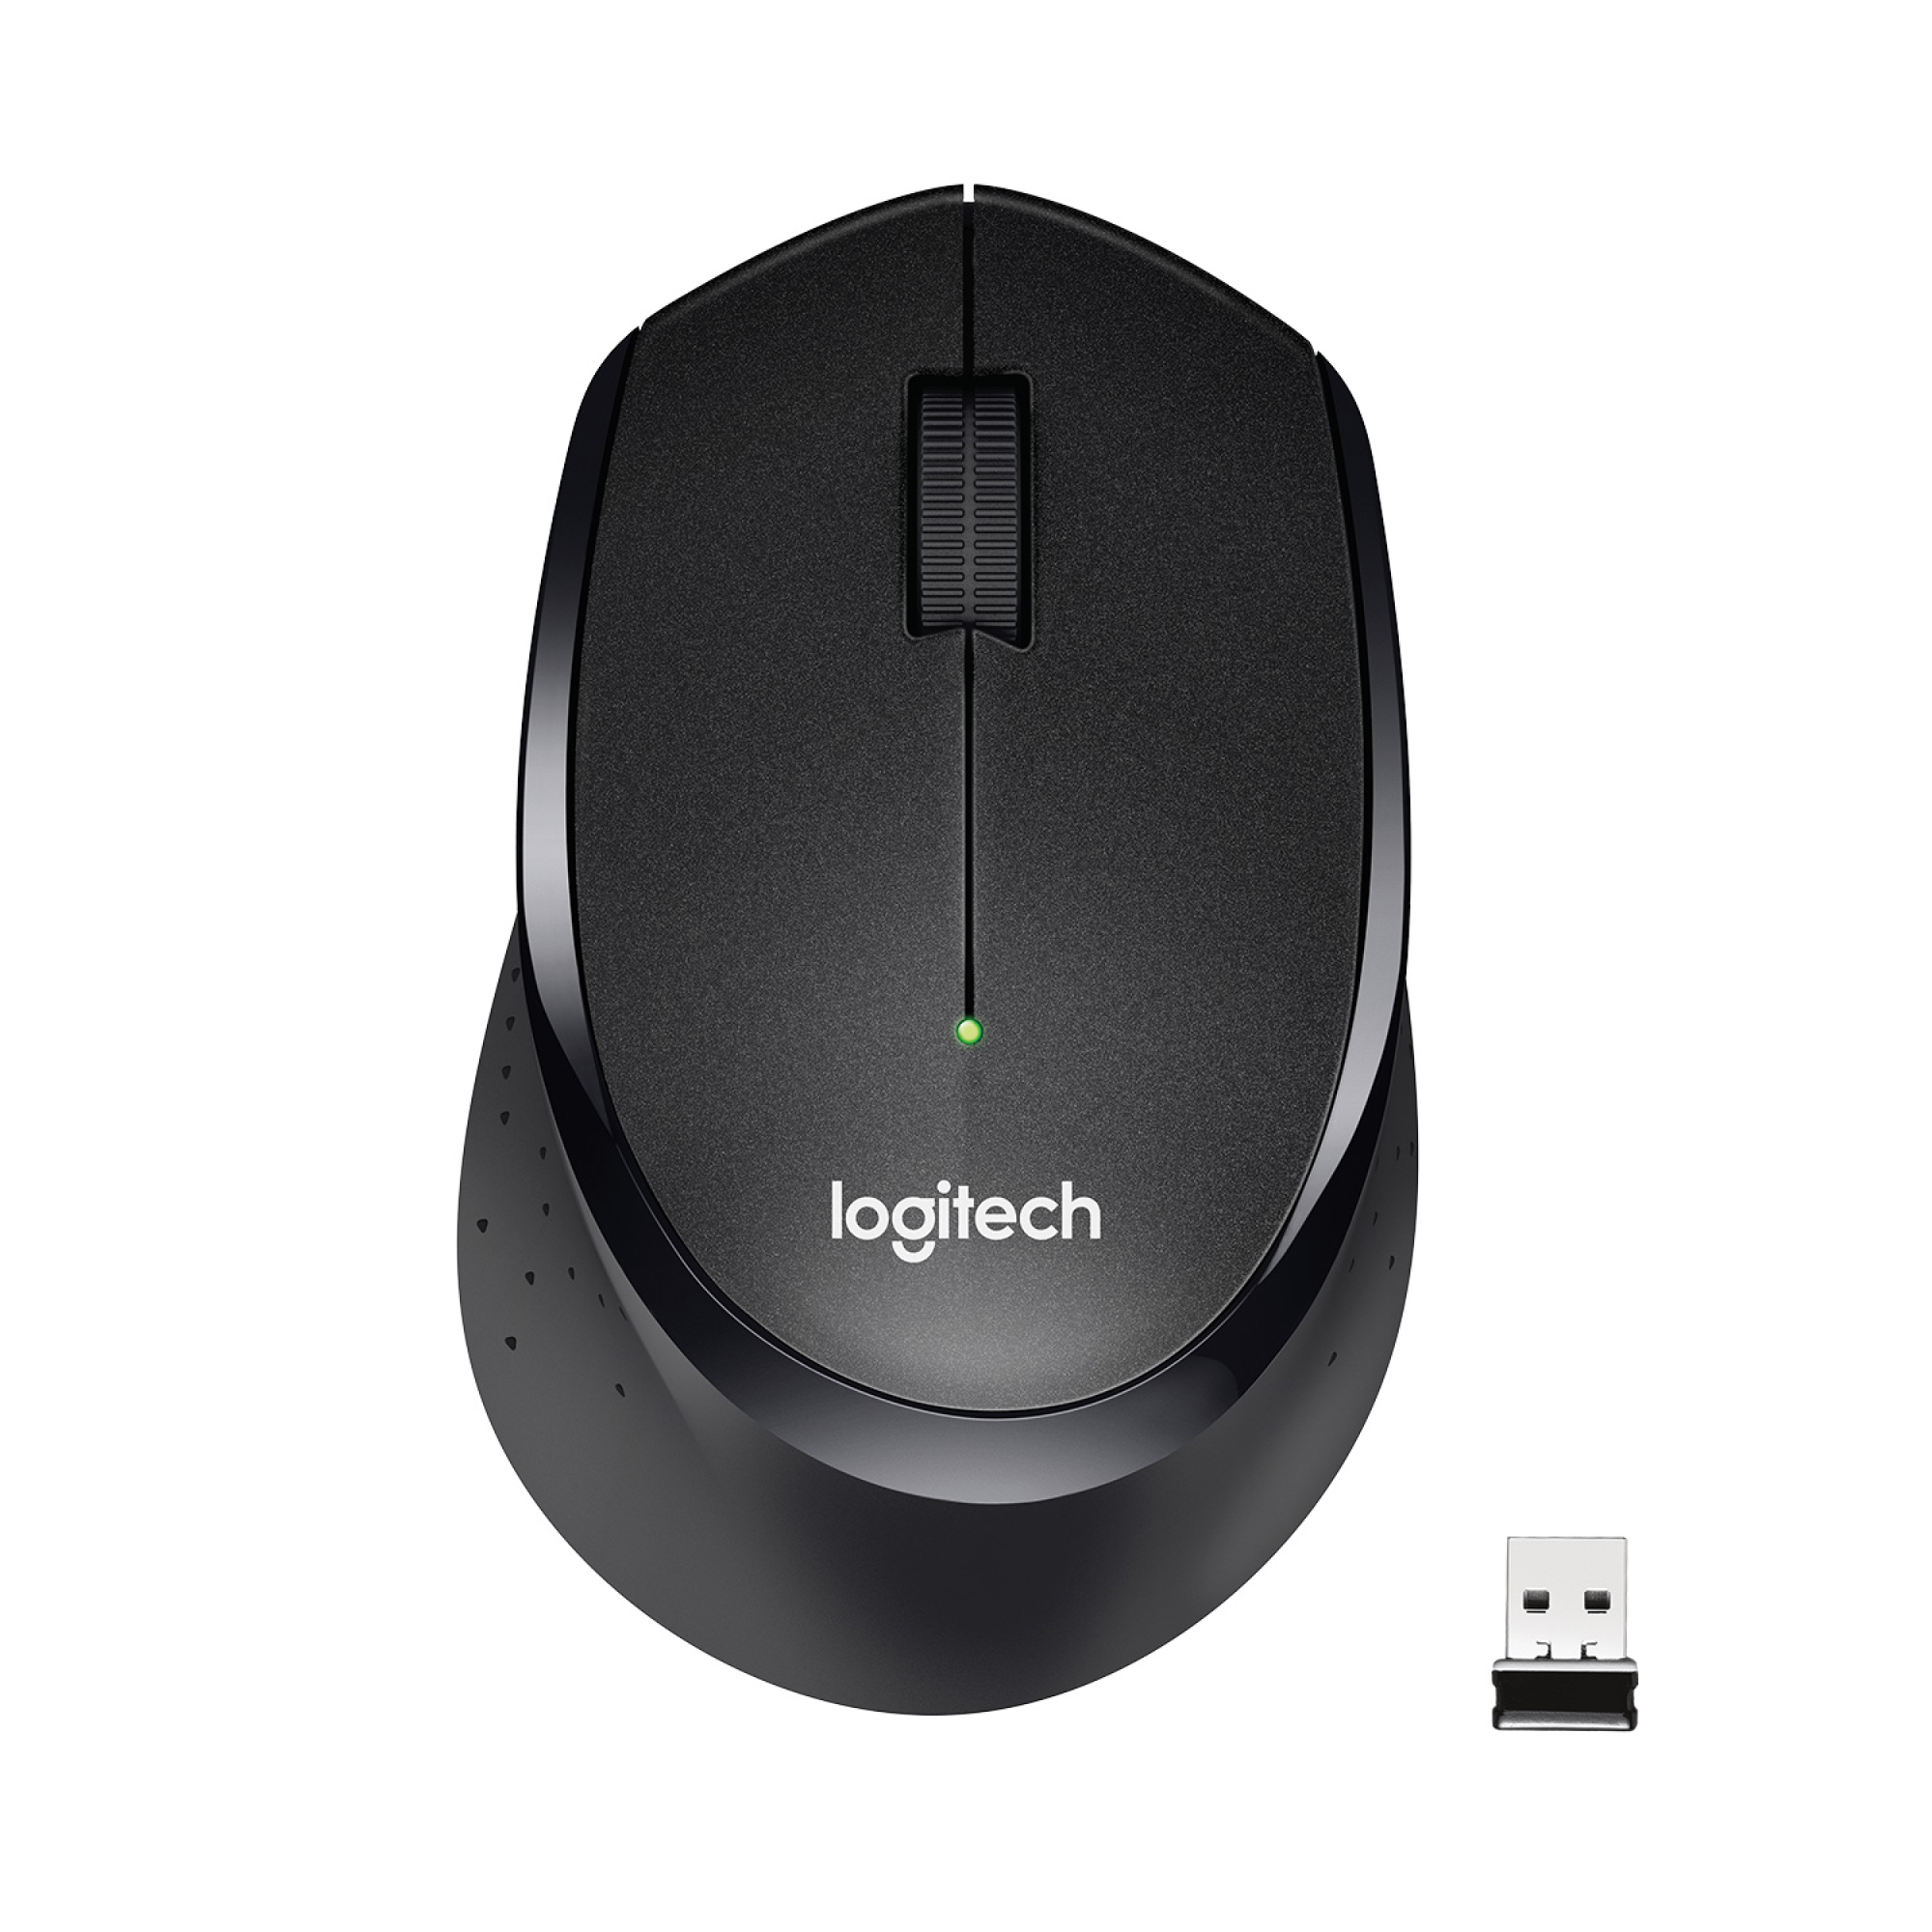 Беспроводная мышь Logitech M330 Black (910-004909), купить в Москве, цены в интернет-магазинах на Мегамаркет